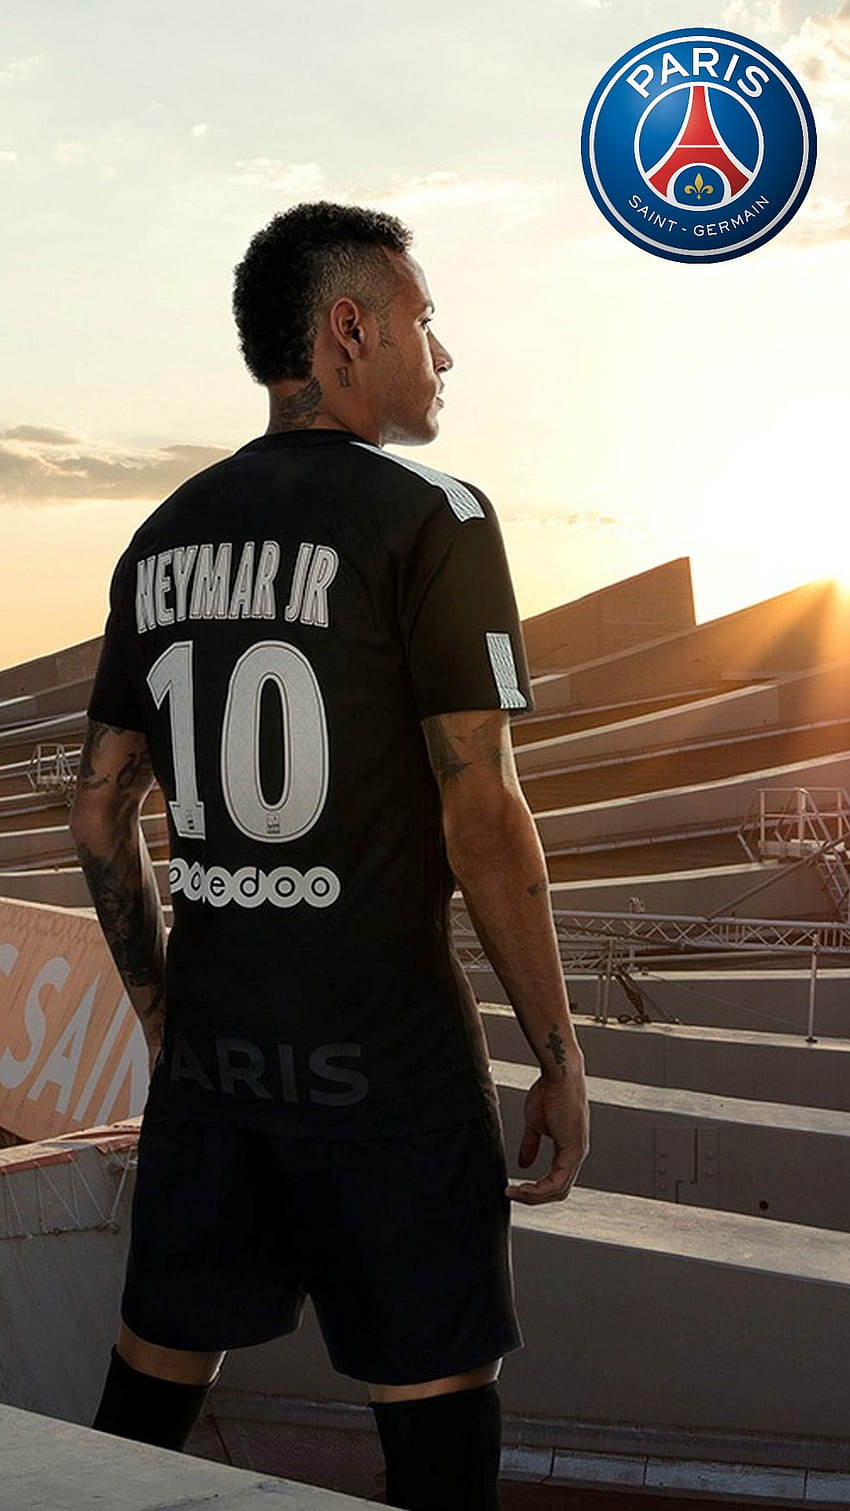 Neymar trong màu áo PSG trên iPhone 6 của bạn sẽ thực sự nổi bật và thu hút sự chú ý của mọi người. Hãy tải hình ảnh liên quan để có một trải nghiệm độc đáo và thú vị.